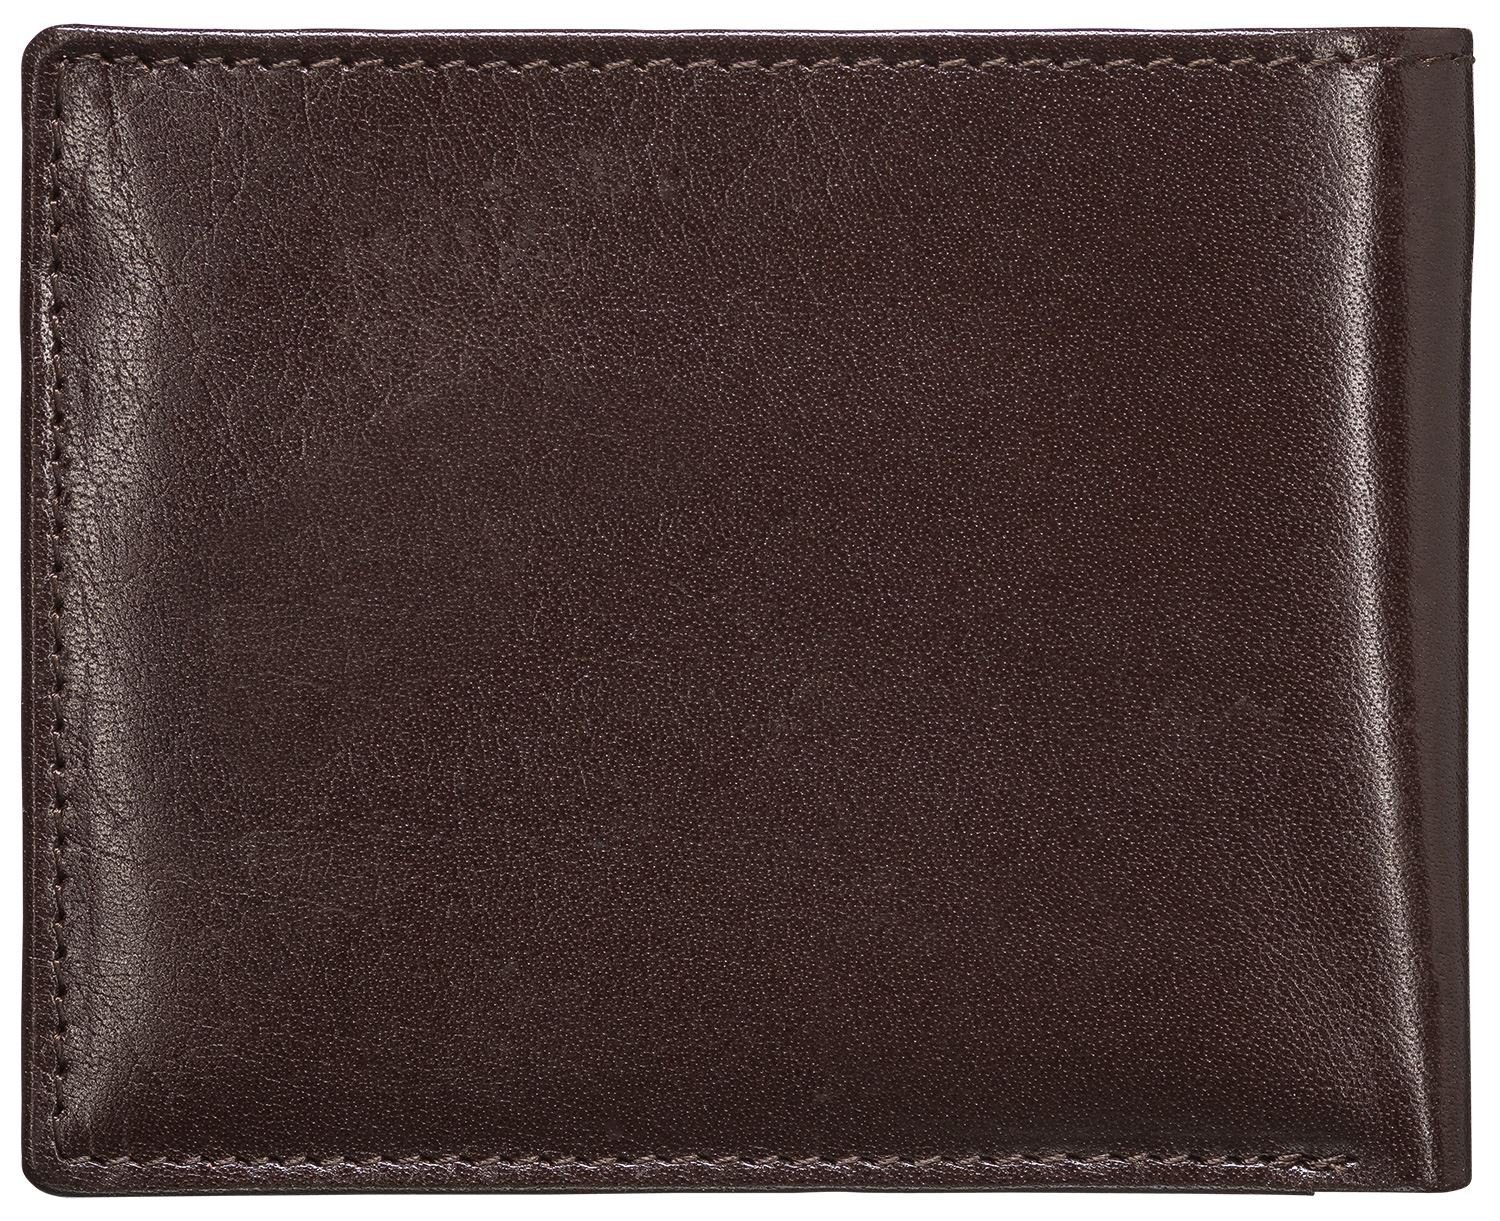 Damen Alle Damentaschen Red Baron Geldbörse RB-WT-004-04, Kreditkartenfächer, Münzfach mit Druckknopf, Einkaufswagenchip-Halter